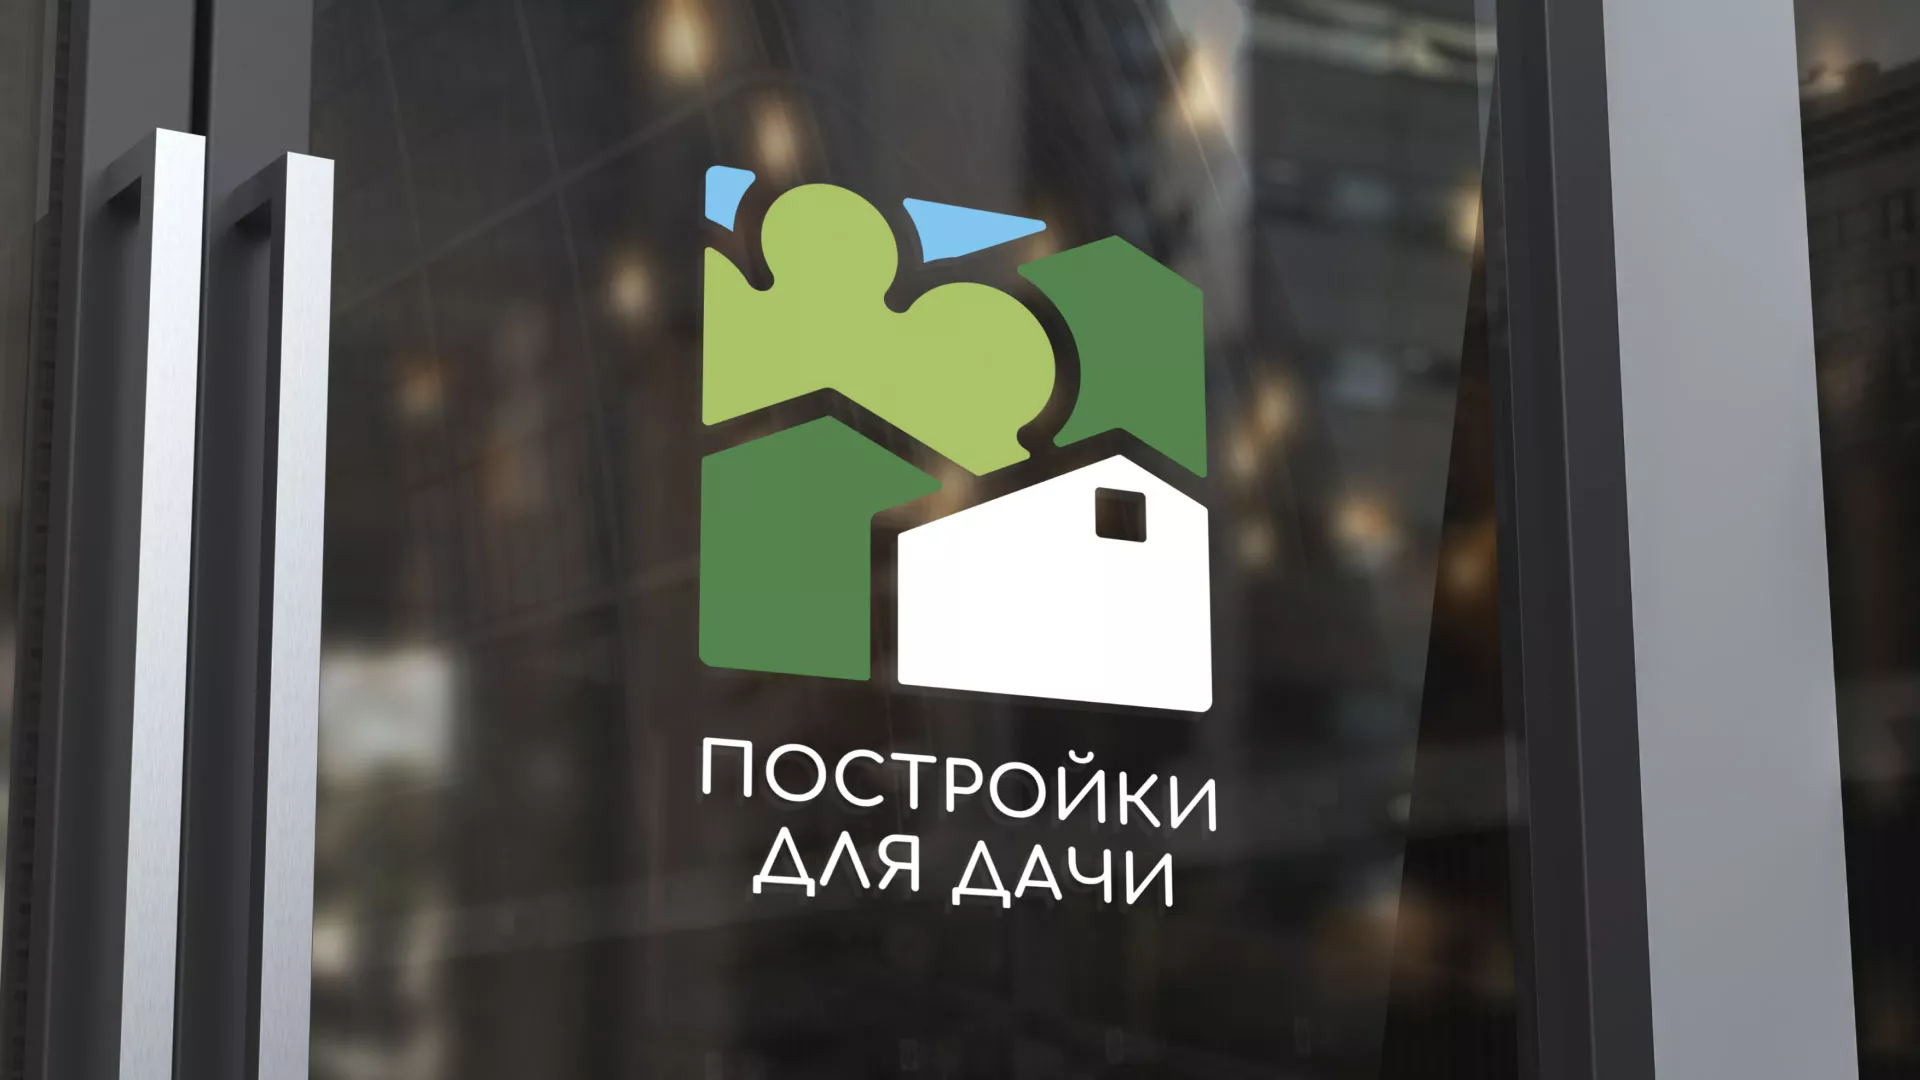 Разработка логотипа в Богородицке для компании «Постройки для дачи»